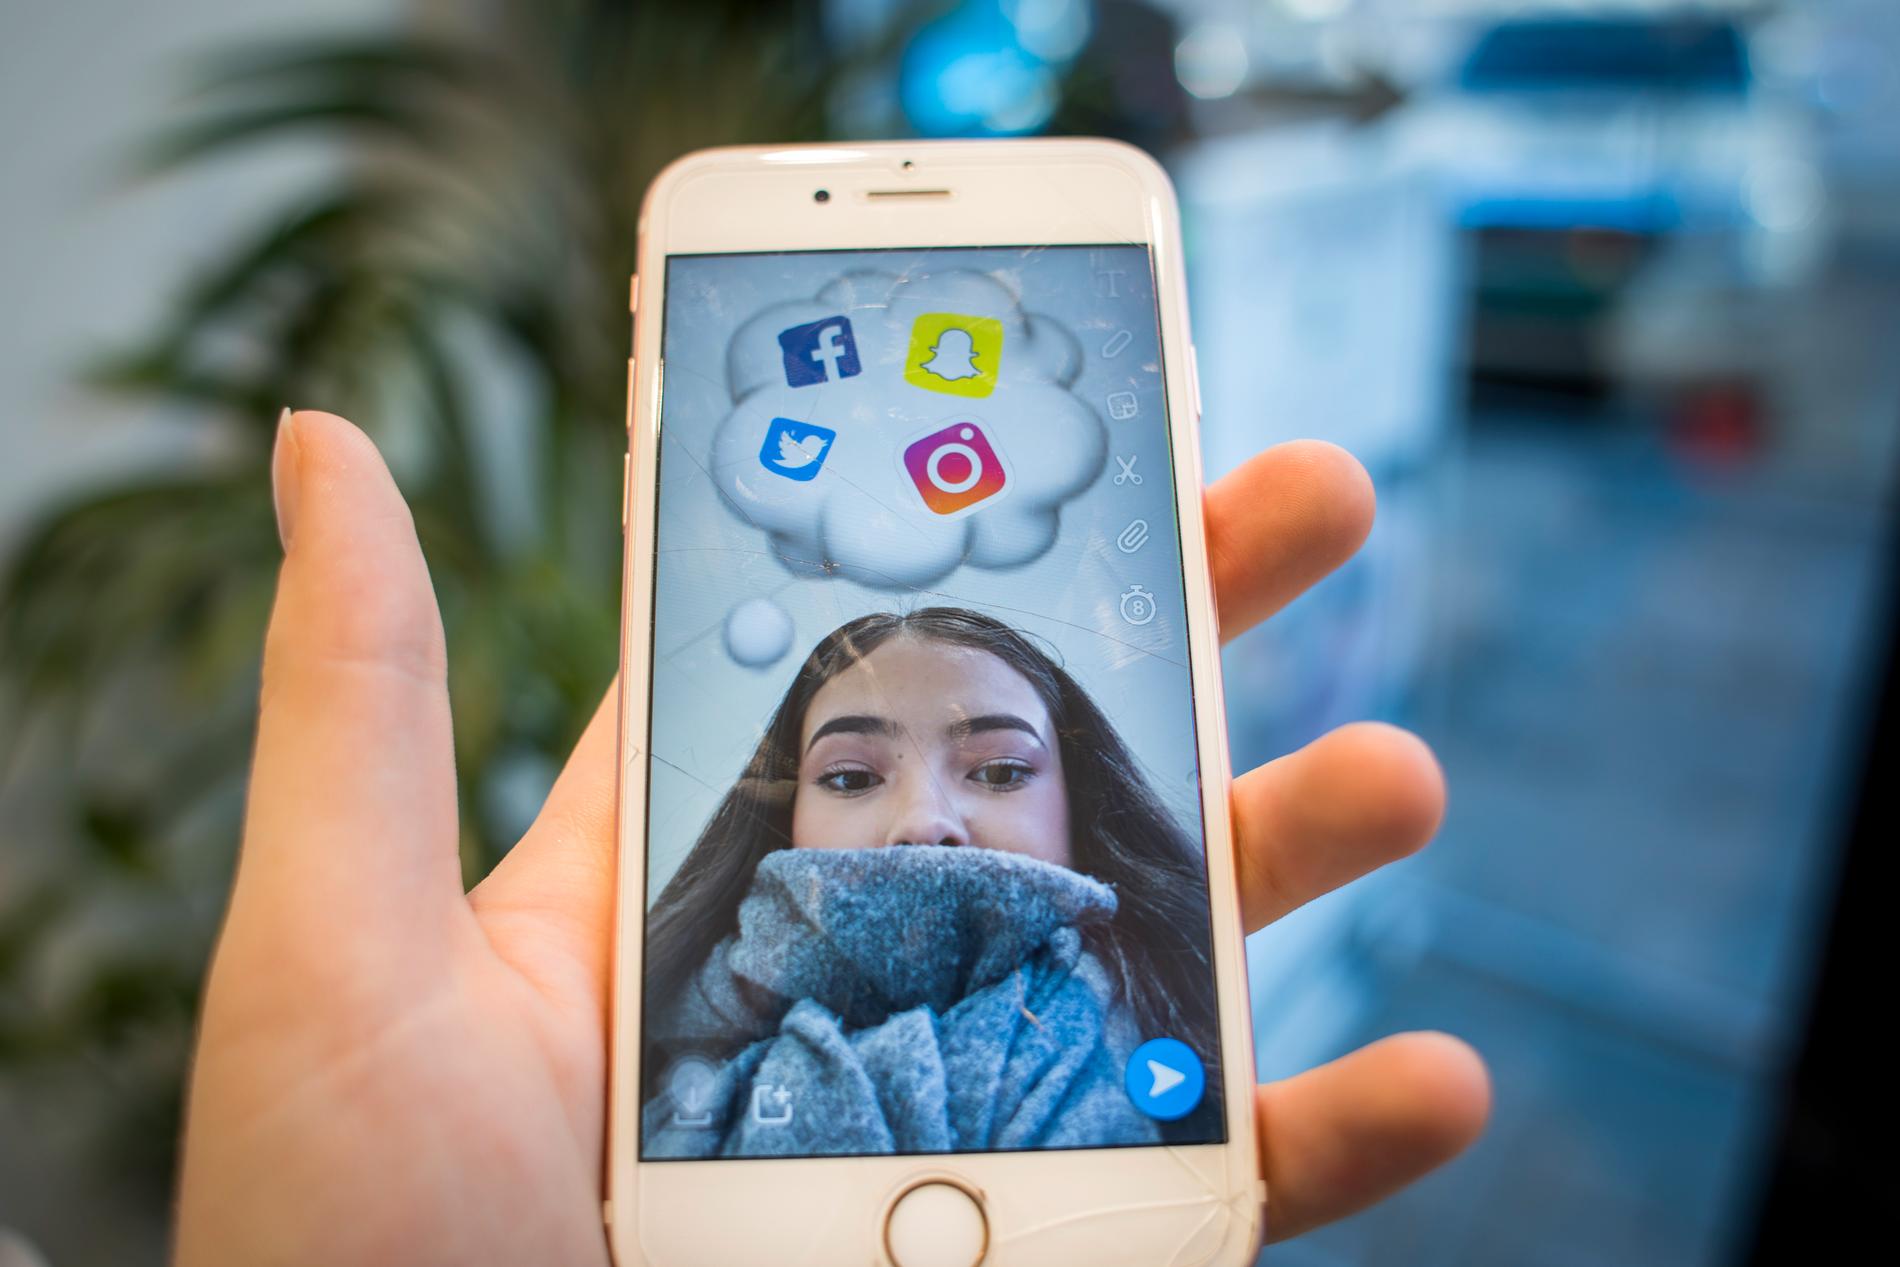 Ungdom ser på sosiale medier som en positiv sosial arena, ifølge en ny FHI-undersøkelse. 